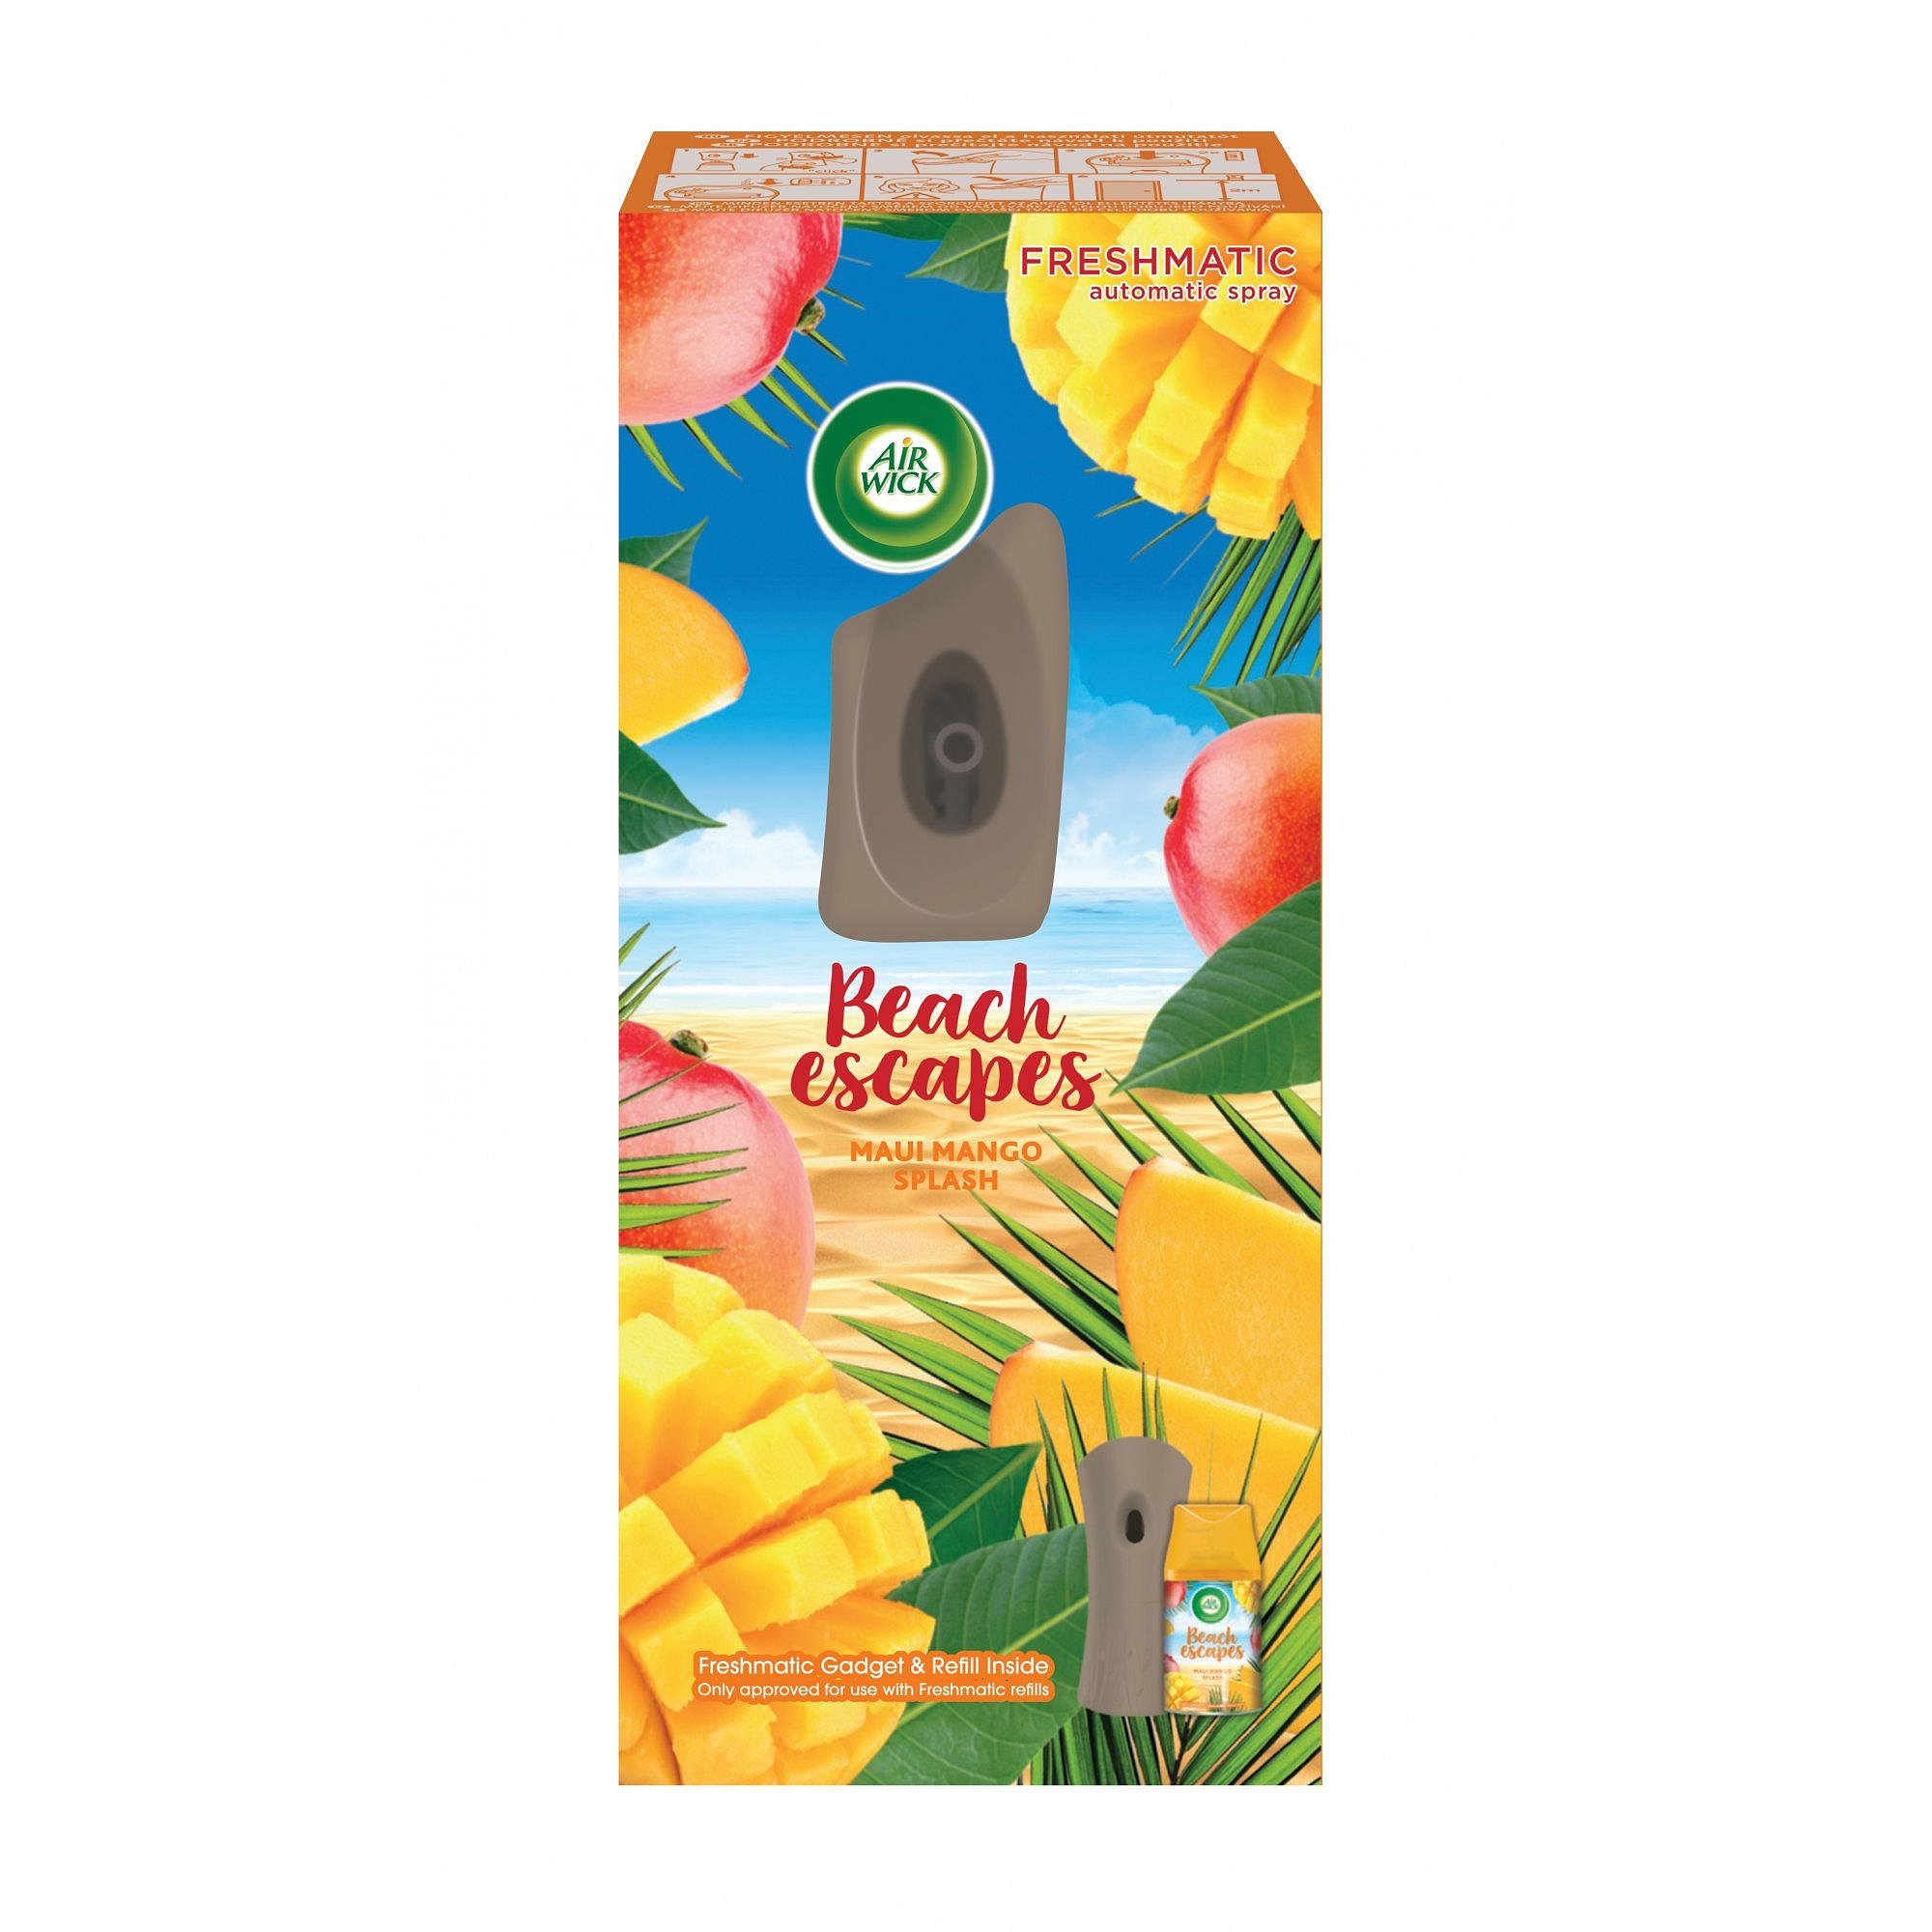 Air Wick Freshmatic Difuzér a náplň - Maui mangové šplíchnutí 250 ml